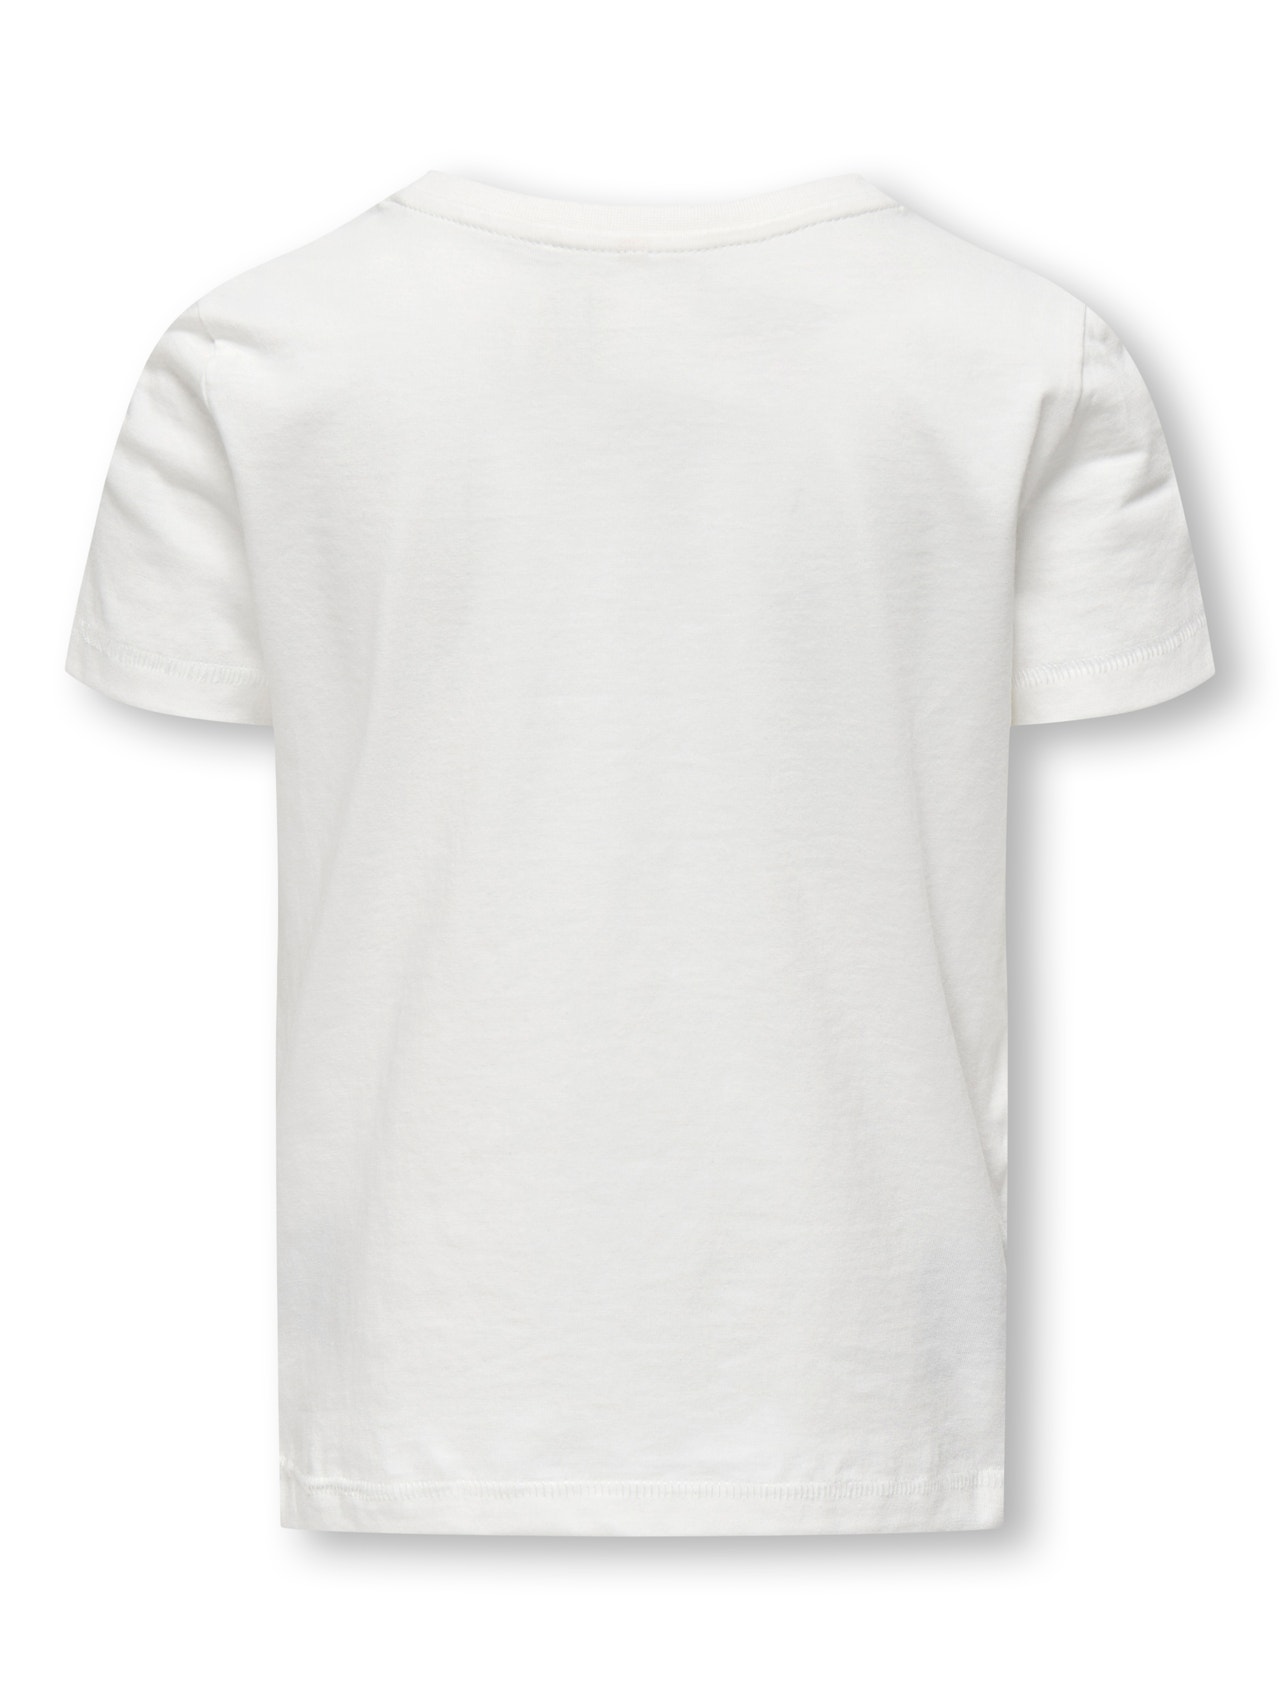 ONLY o-neck t-shirt -Cloud Dancer - 15296737